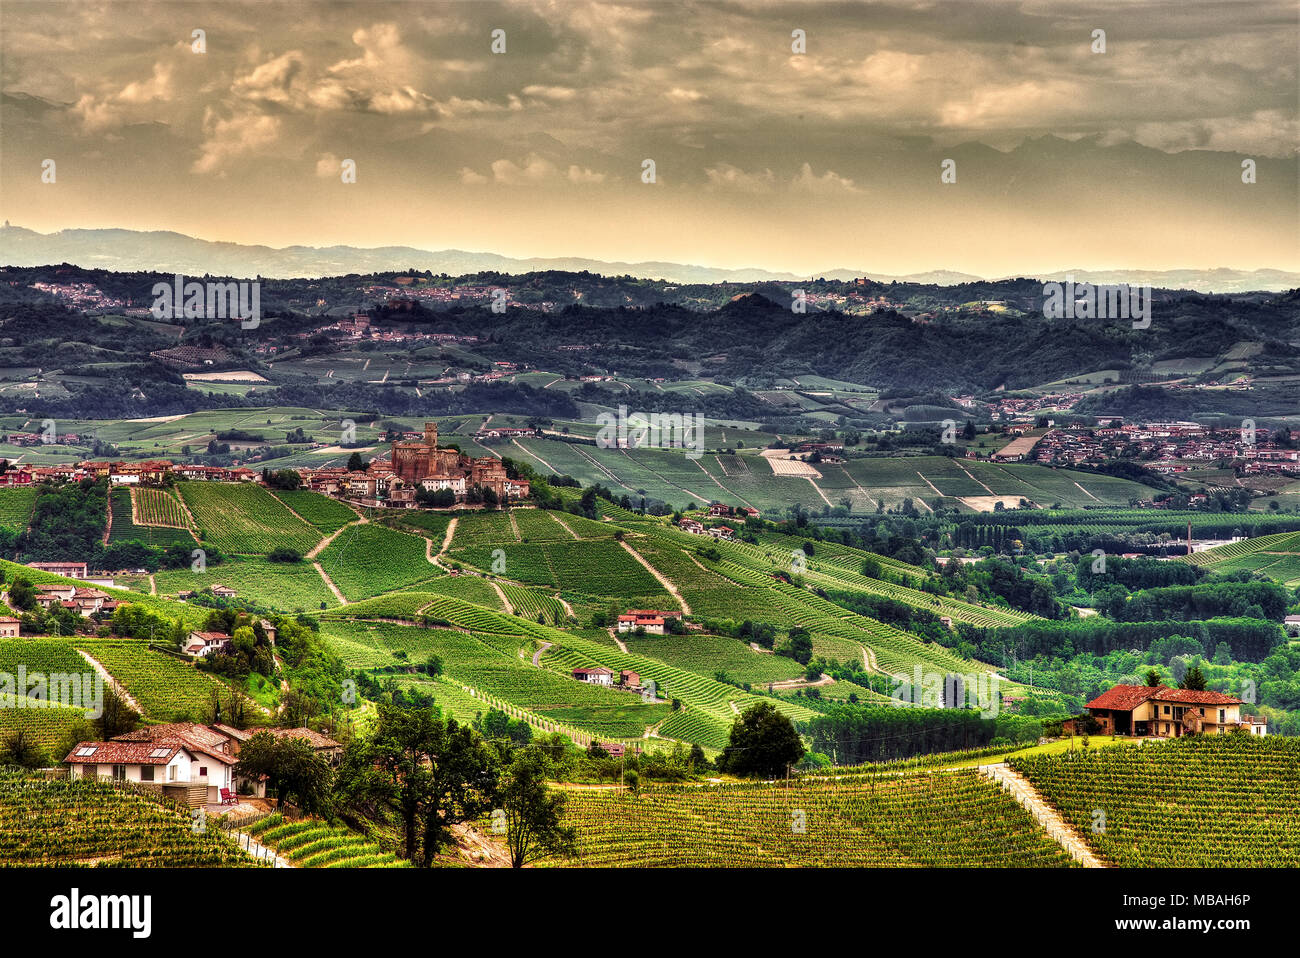 Un'ampia vista sulle colline delle Langhe coltivate a vigneti e punteggiate di fattorie e cantine, intorno al villaggio di Castiglione Falletto. Foto Stock